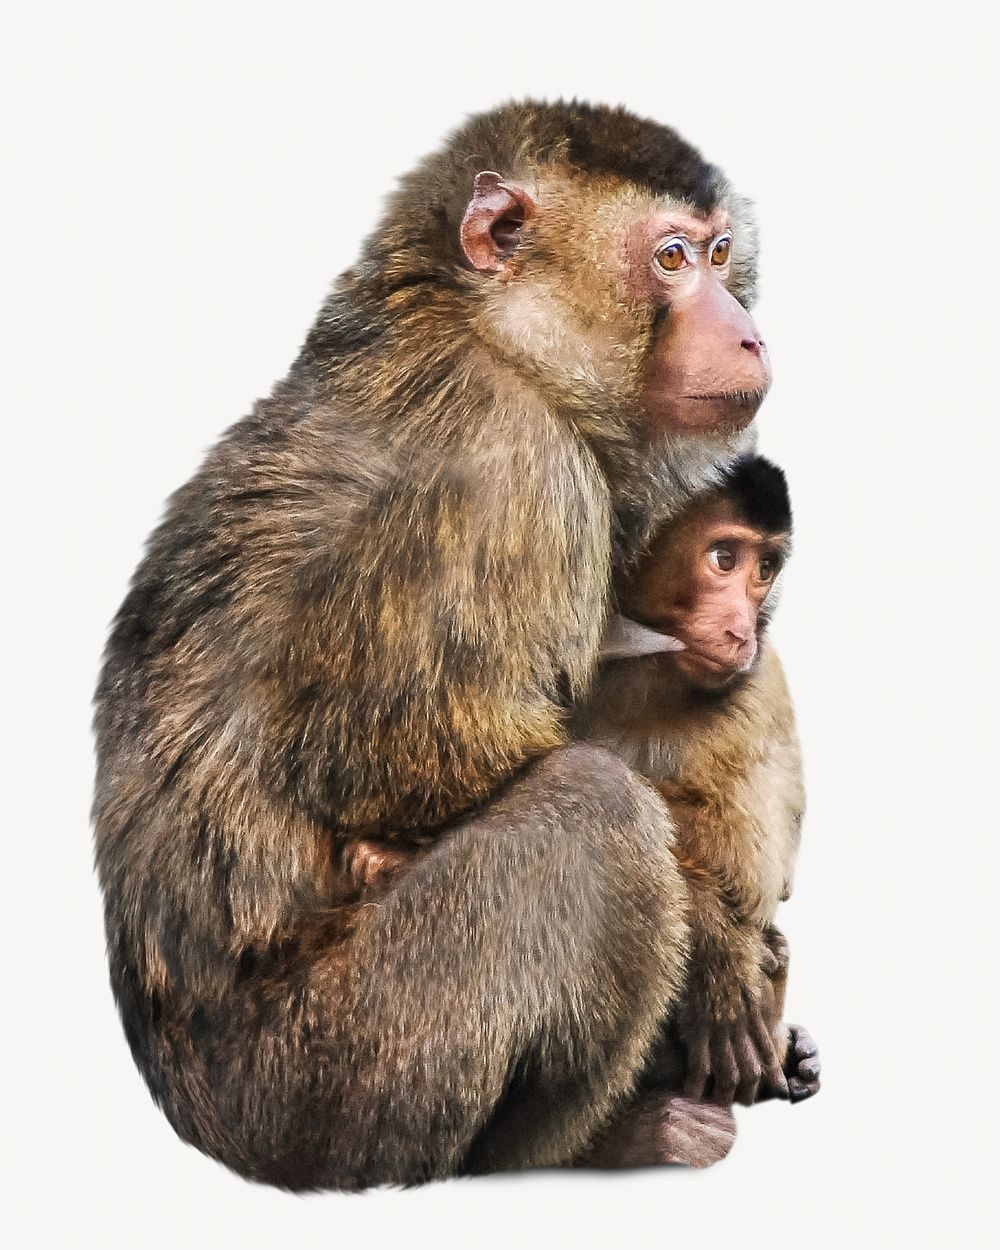 Breastfeeding monkey Isolated image